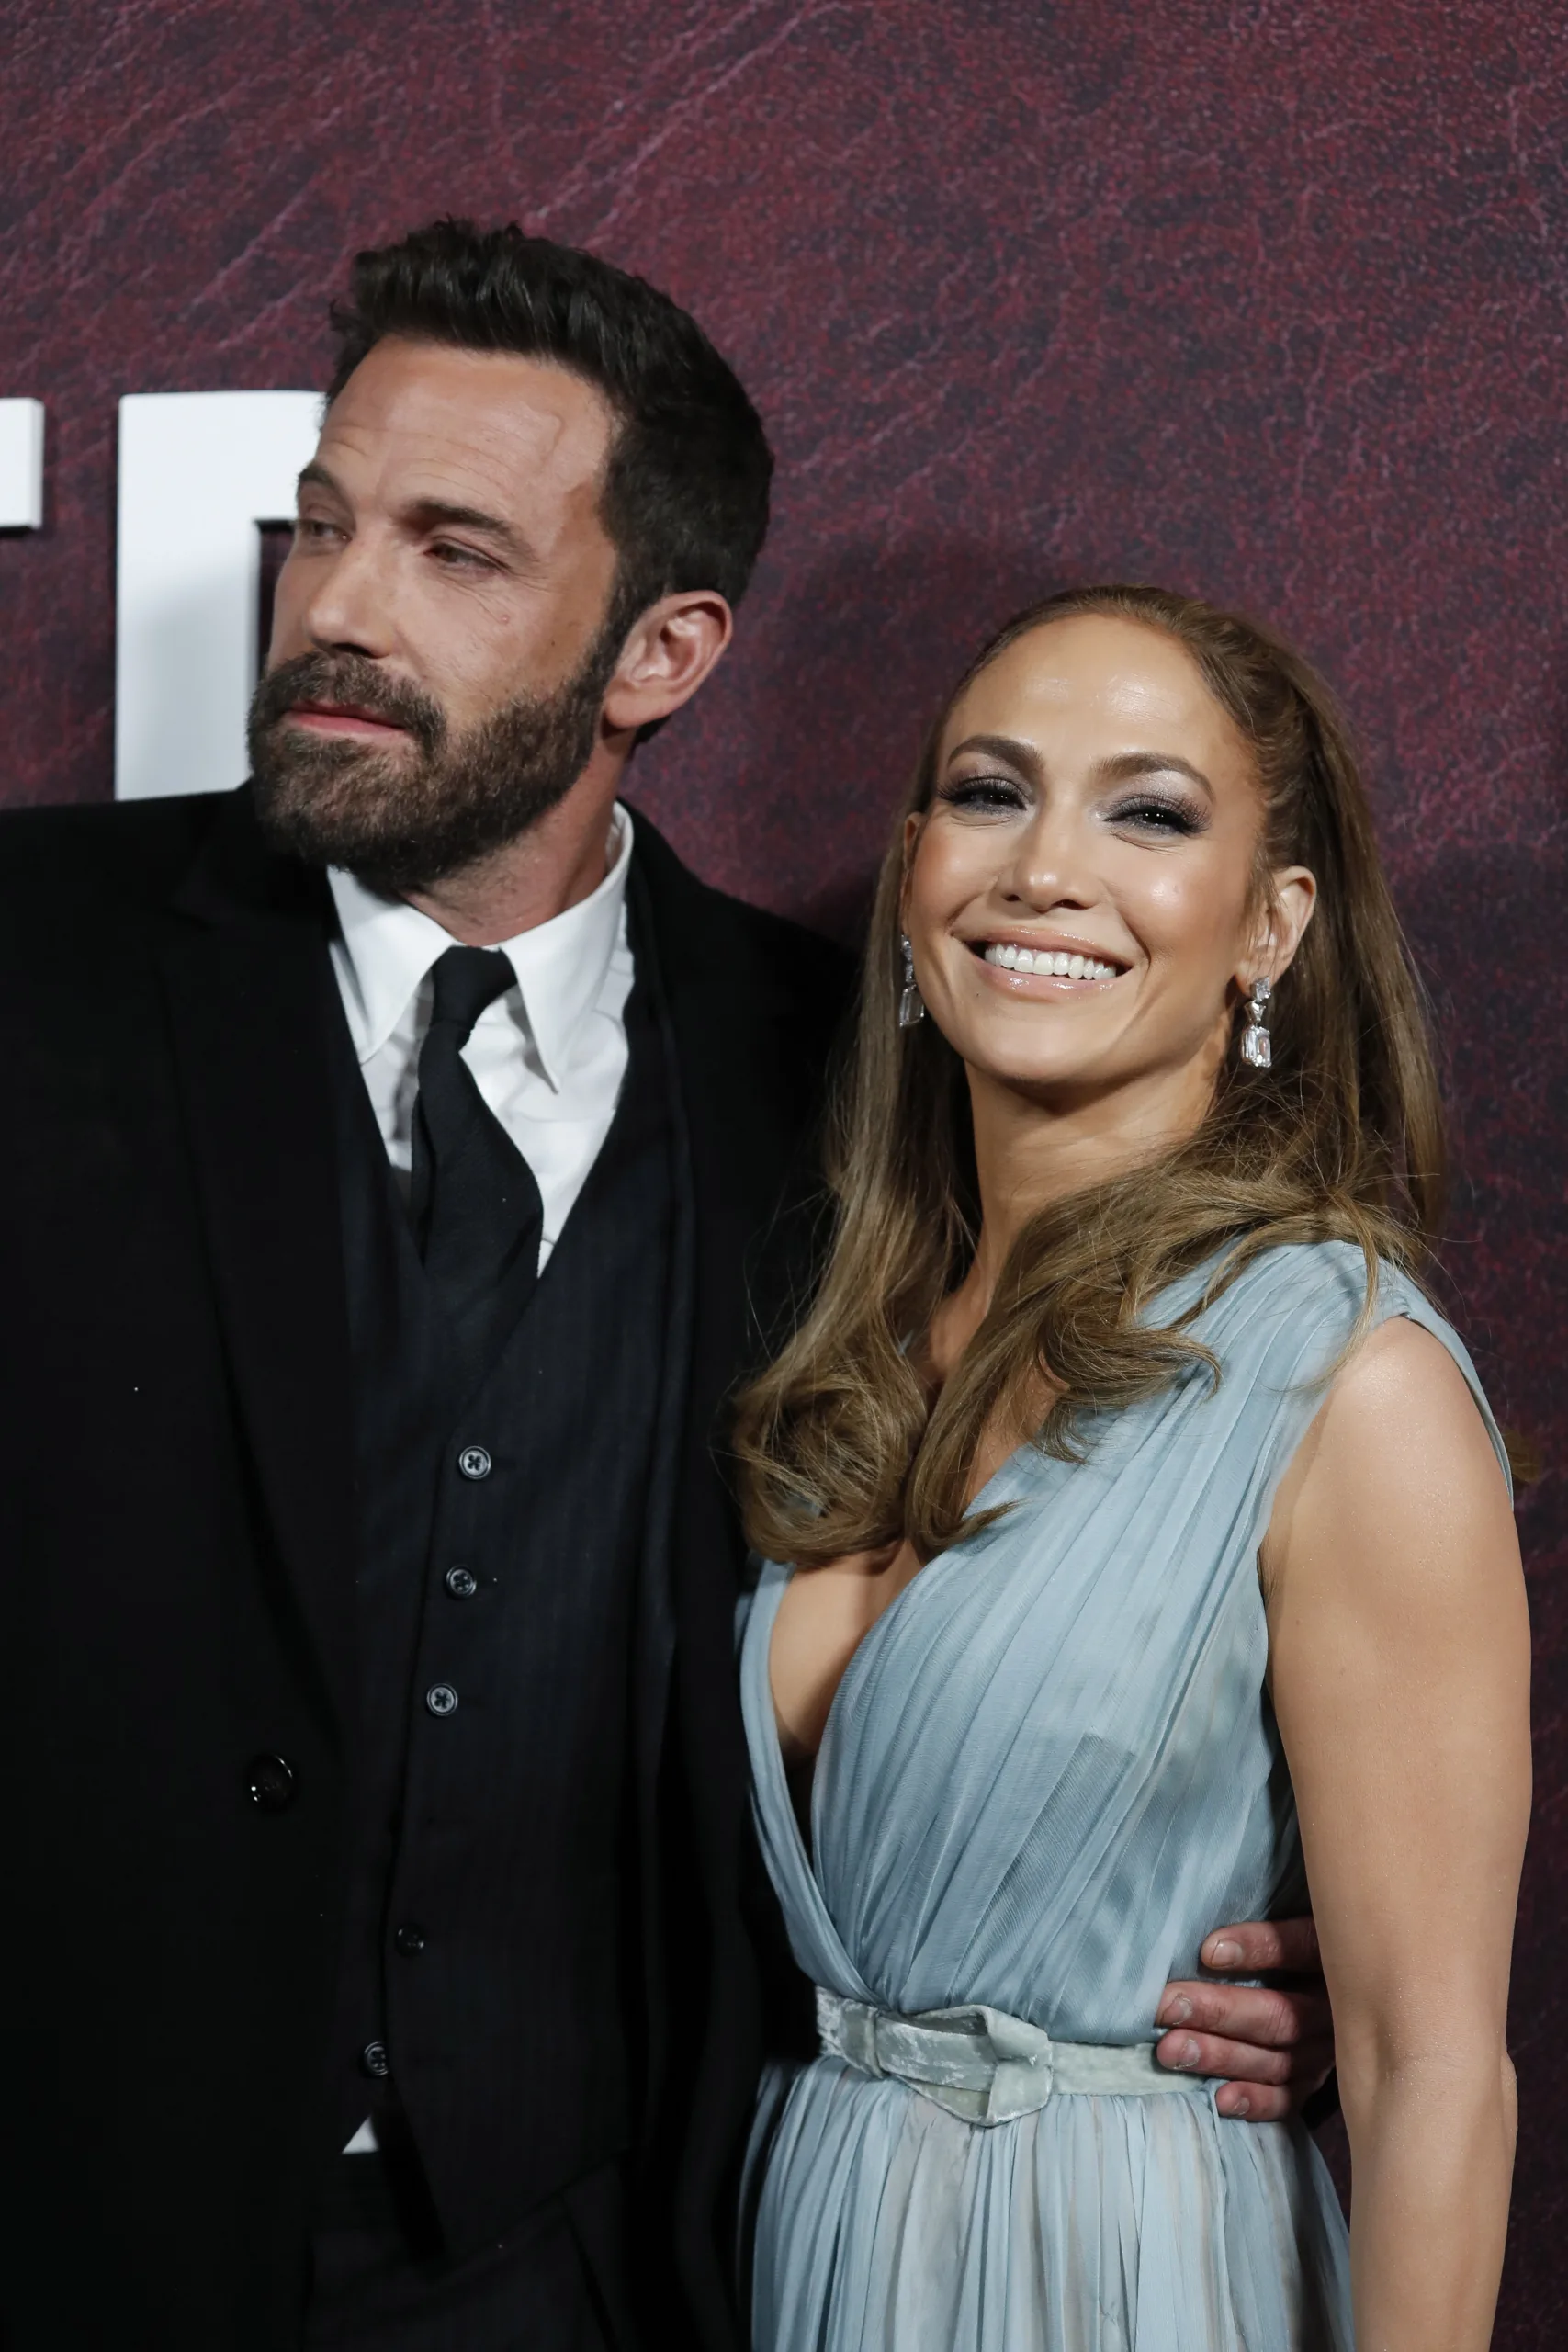 Η Jennifer Lopez ακυρώνει την περιοδεία για να περάσει χρόνο με τα παιδιά της